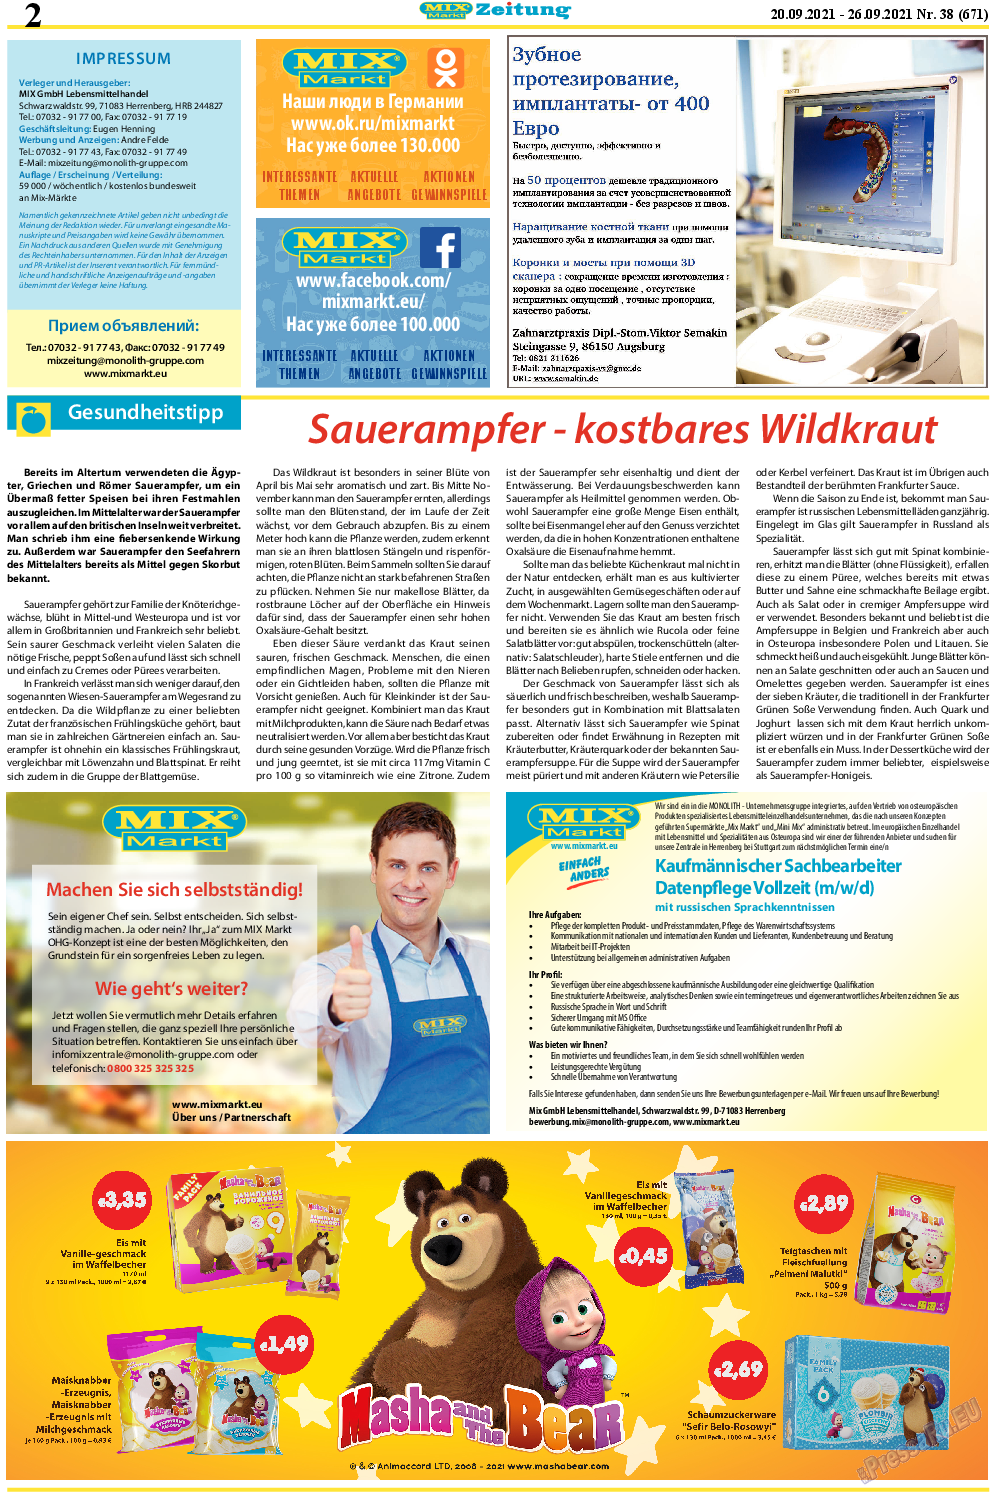 MIX-Markt Zeitung, газета. 2021 №38 стр.2